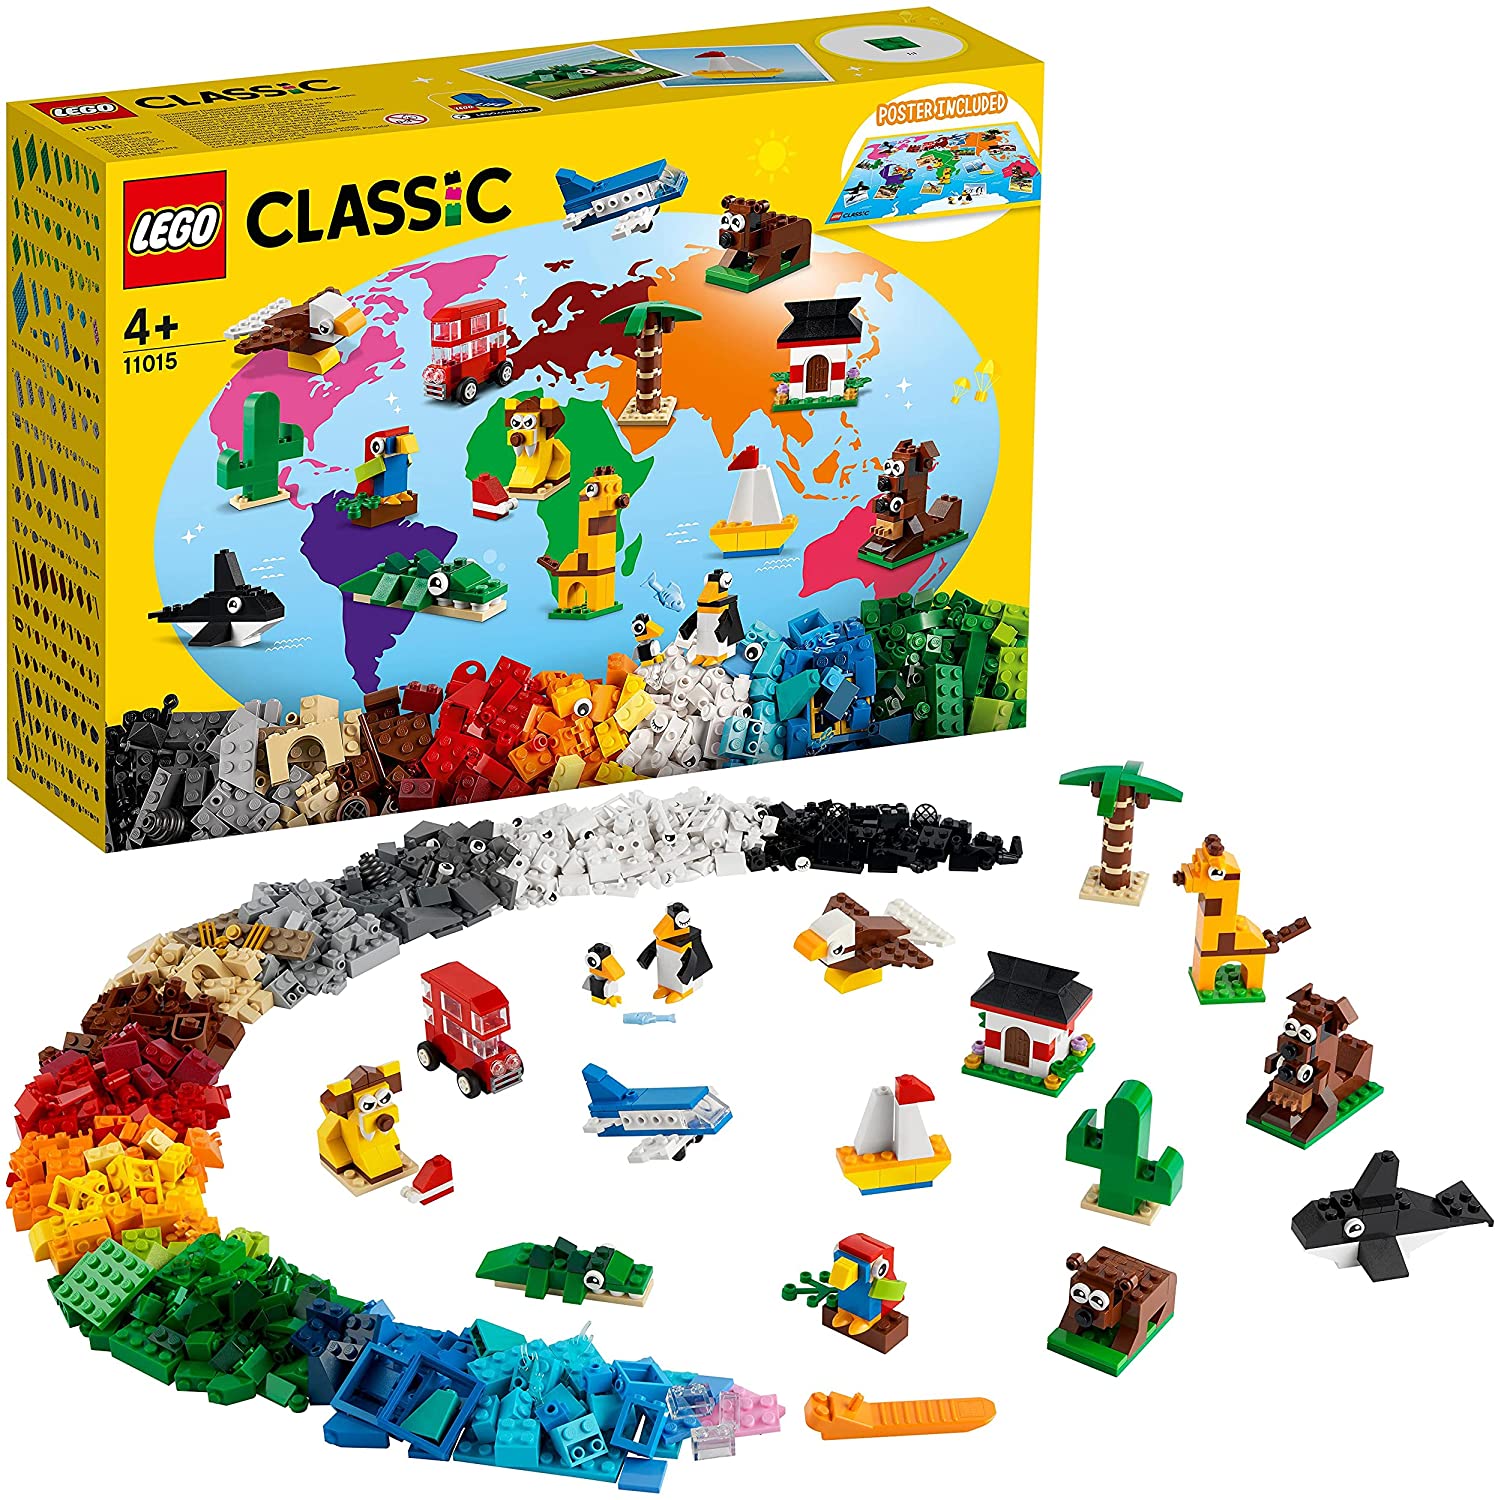 Einmal um die Welt von LEGO Classic